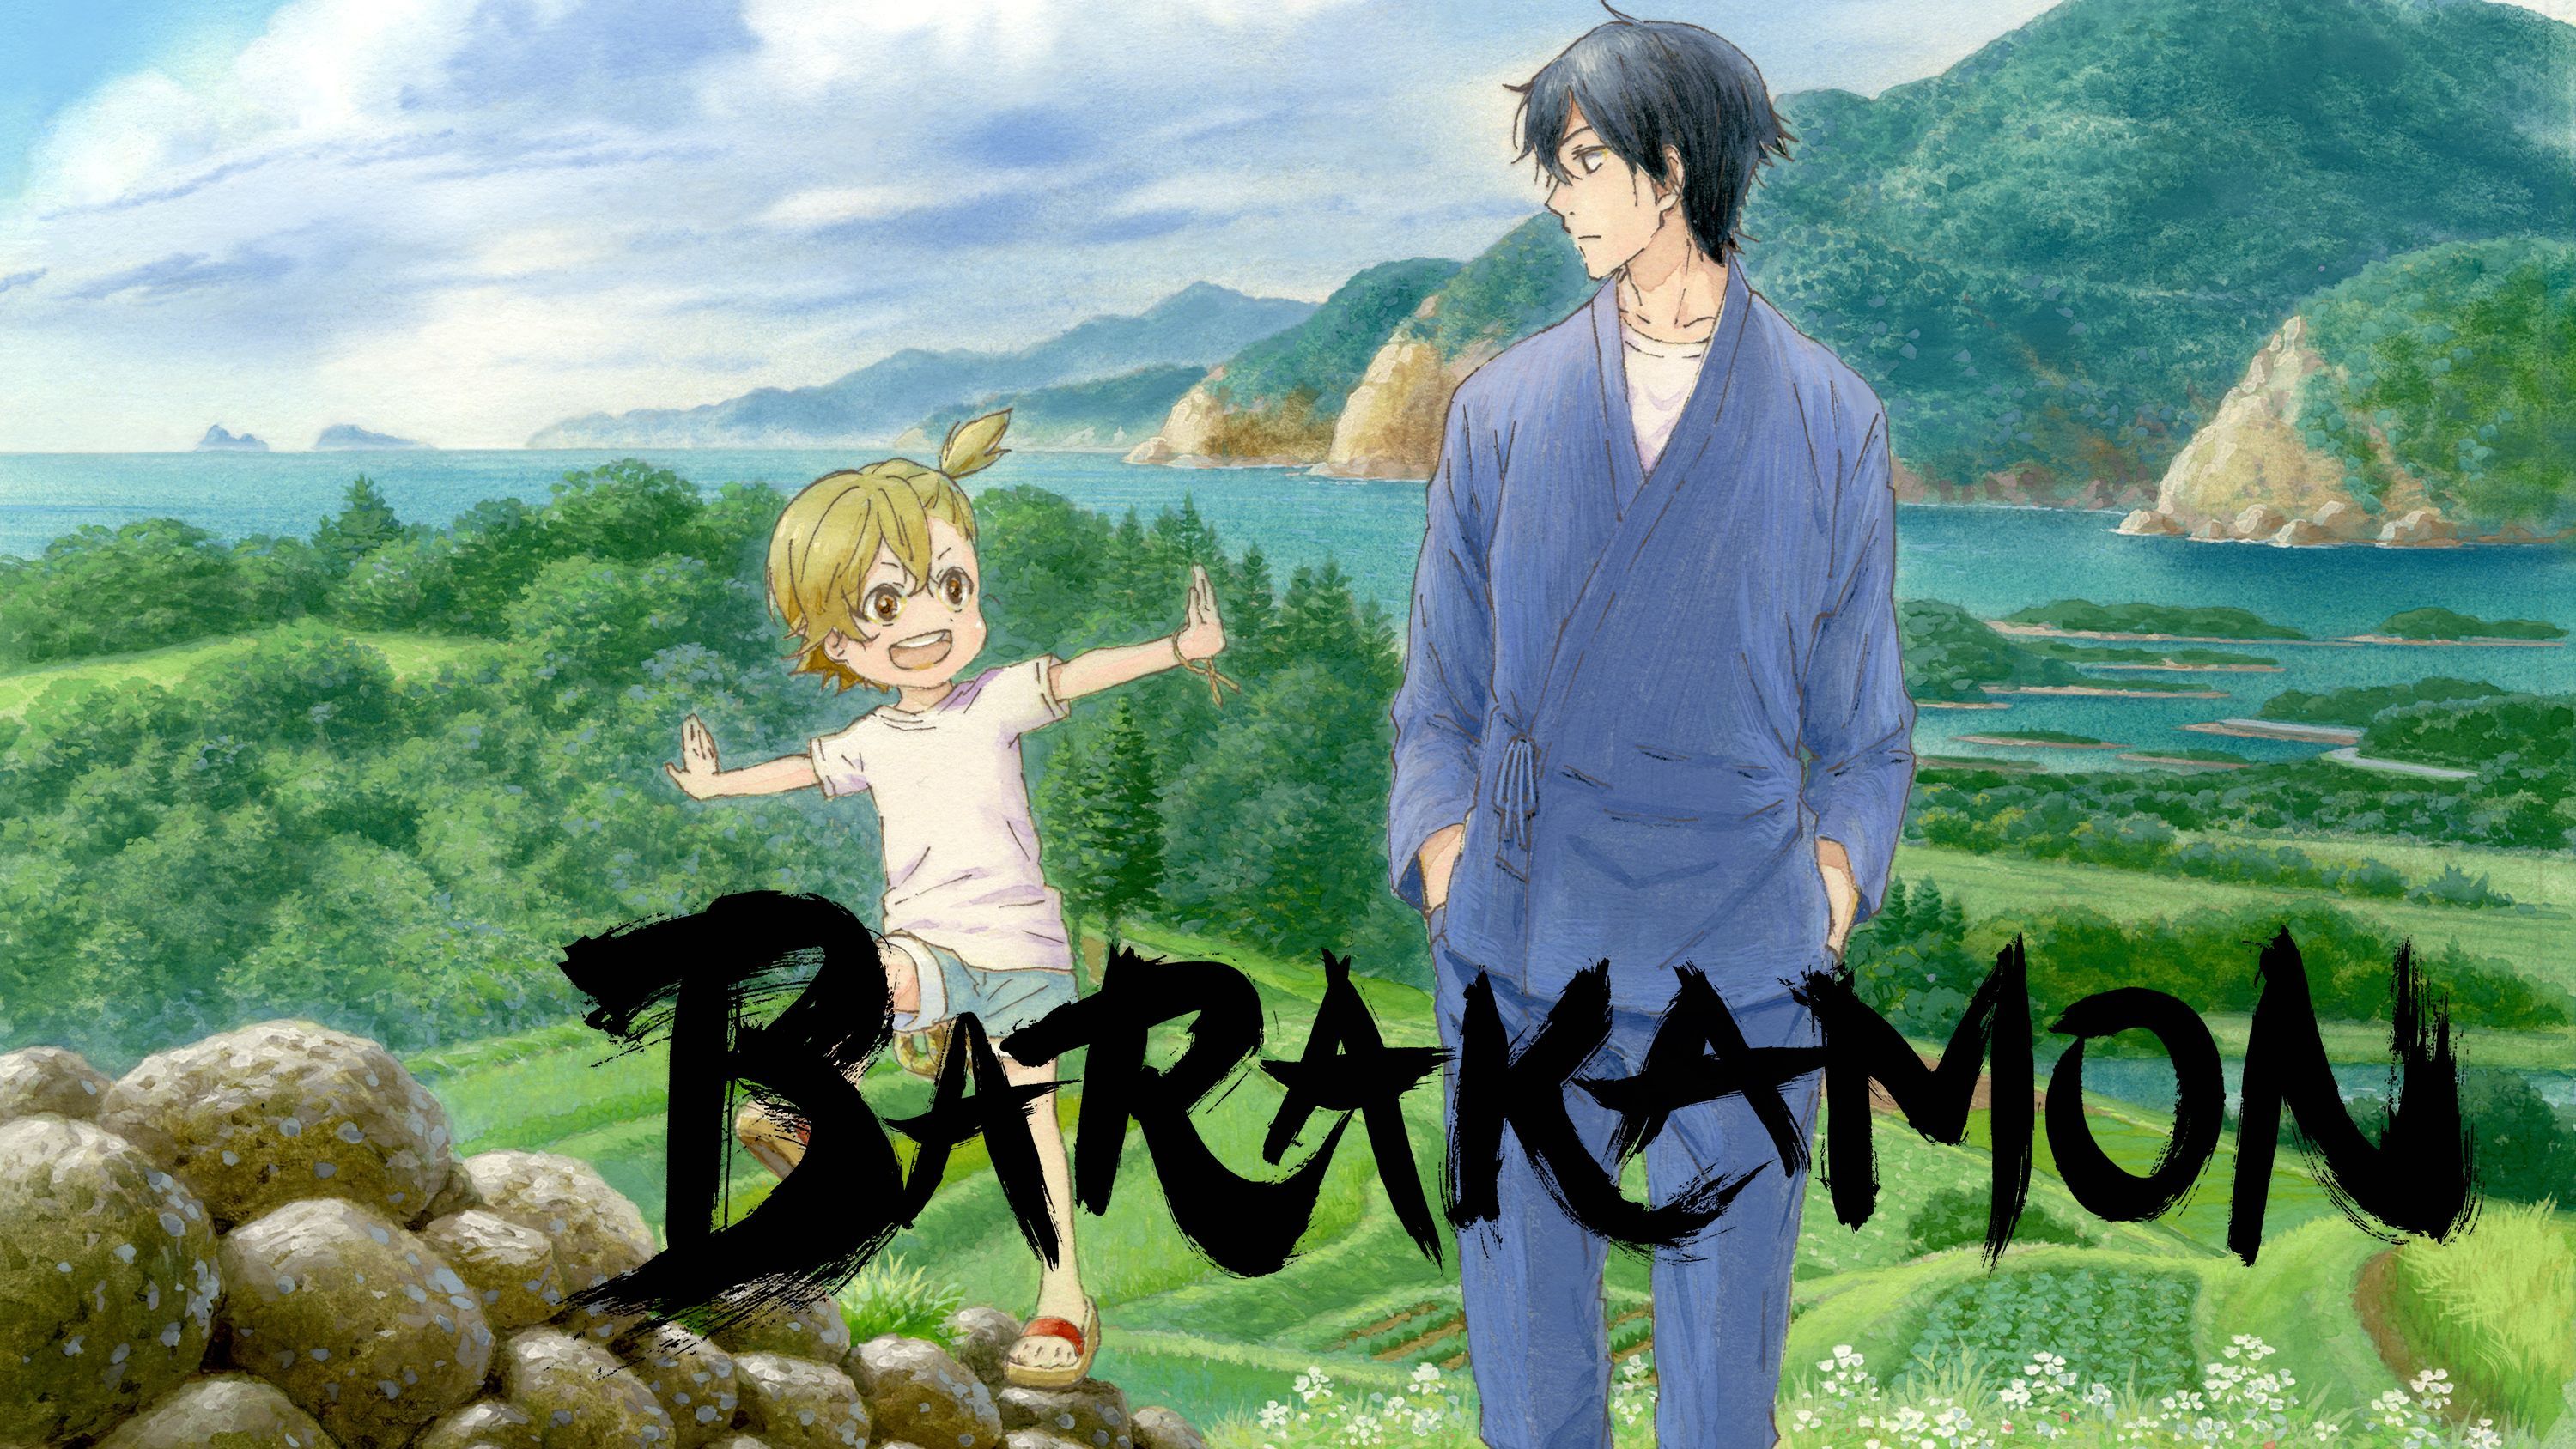 Belajar Menjadi Pribadi yang Lebih Baik Lewat Anime "Barakamon" Halaman 1 -  Kompasiana.com